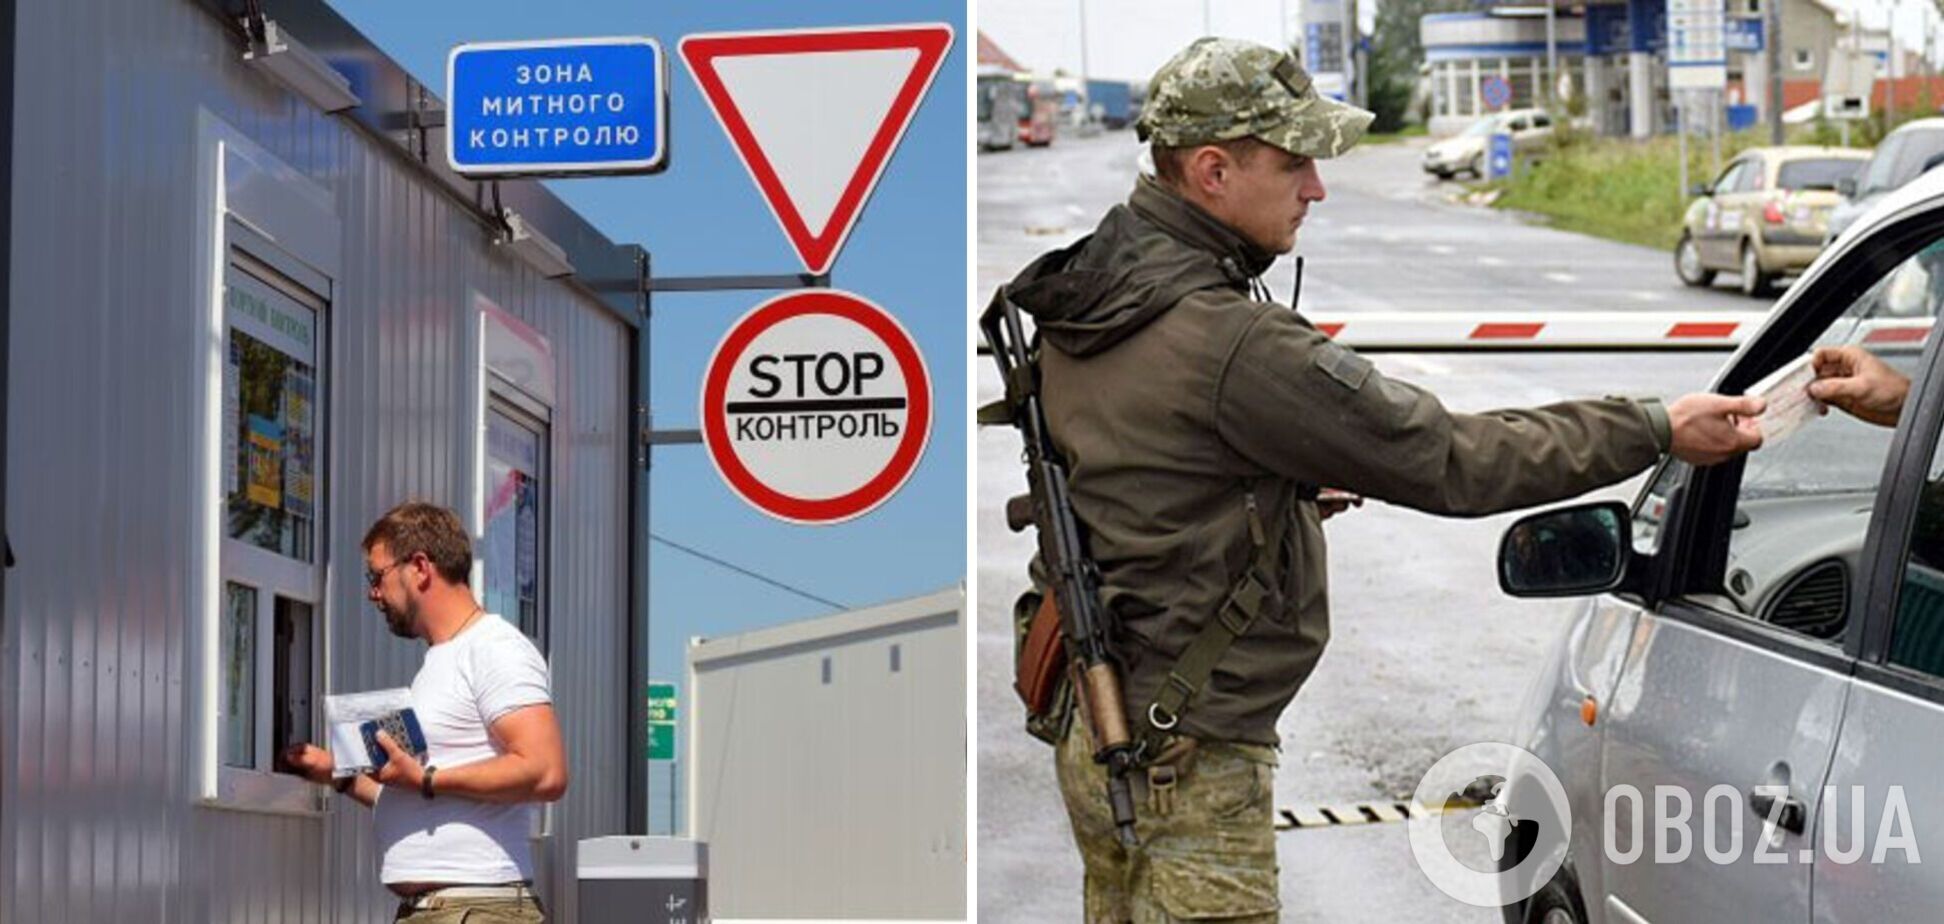 В Украине изменили правила пересечения границы для студентов: подробности